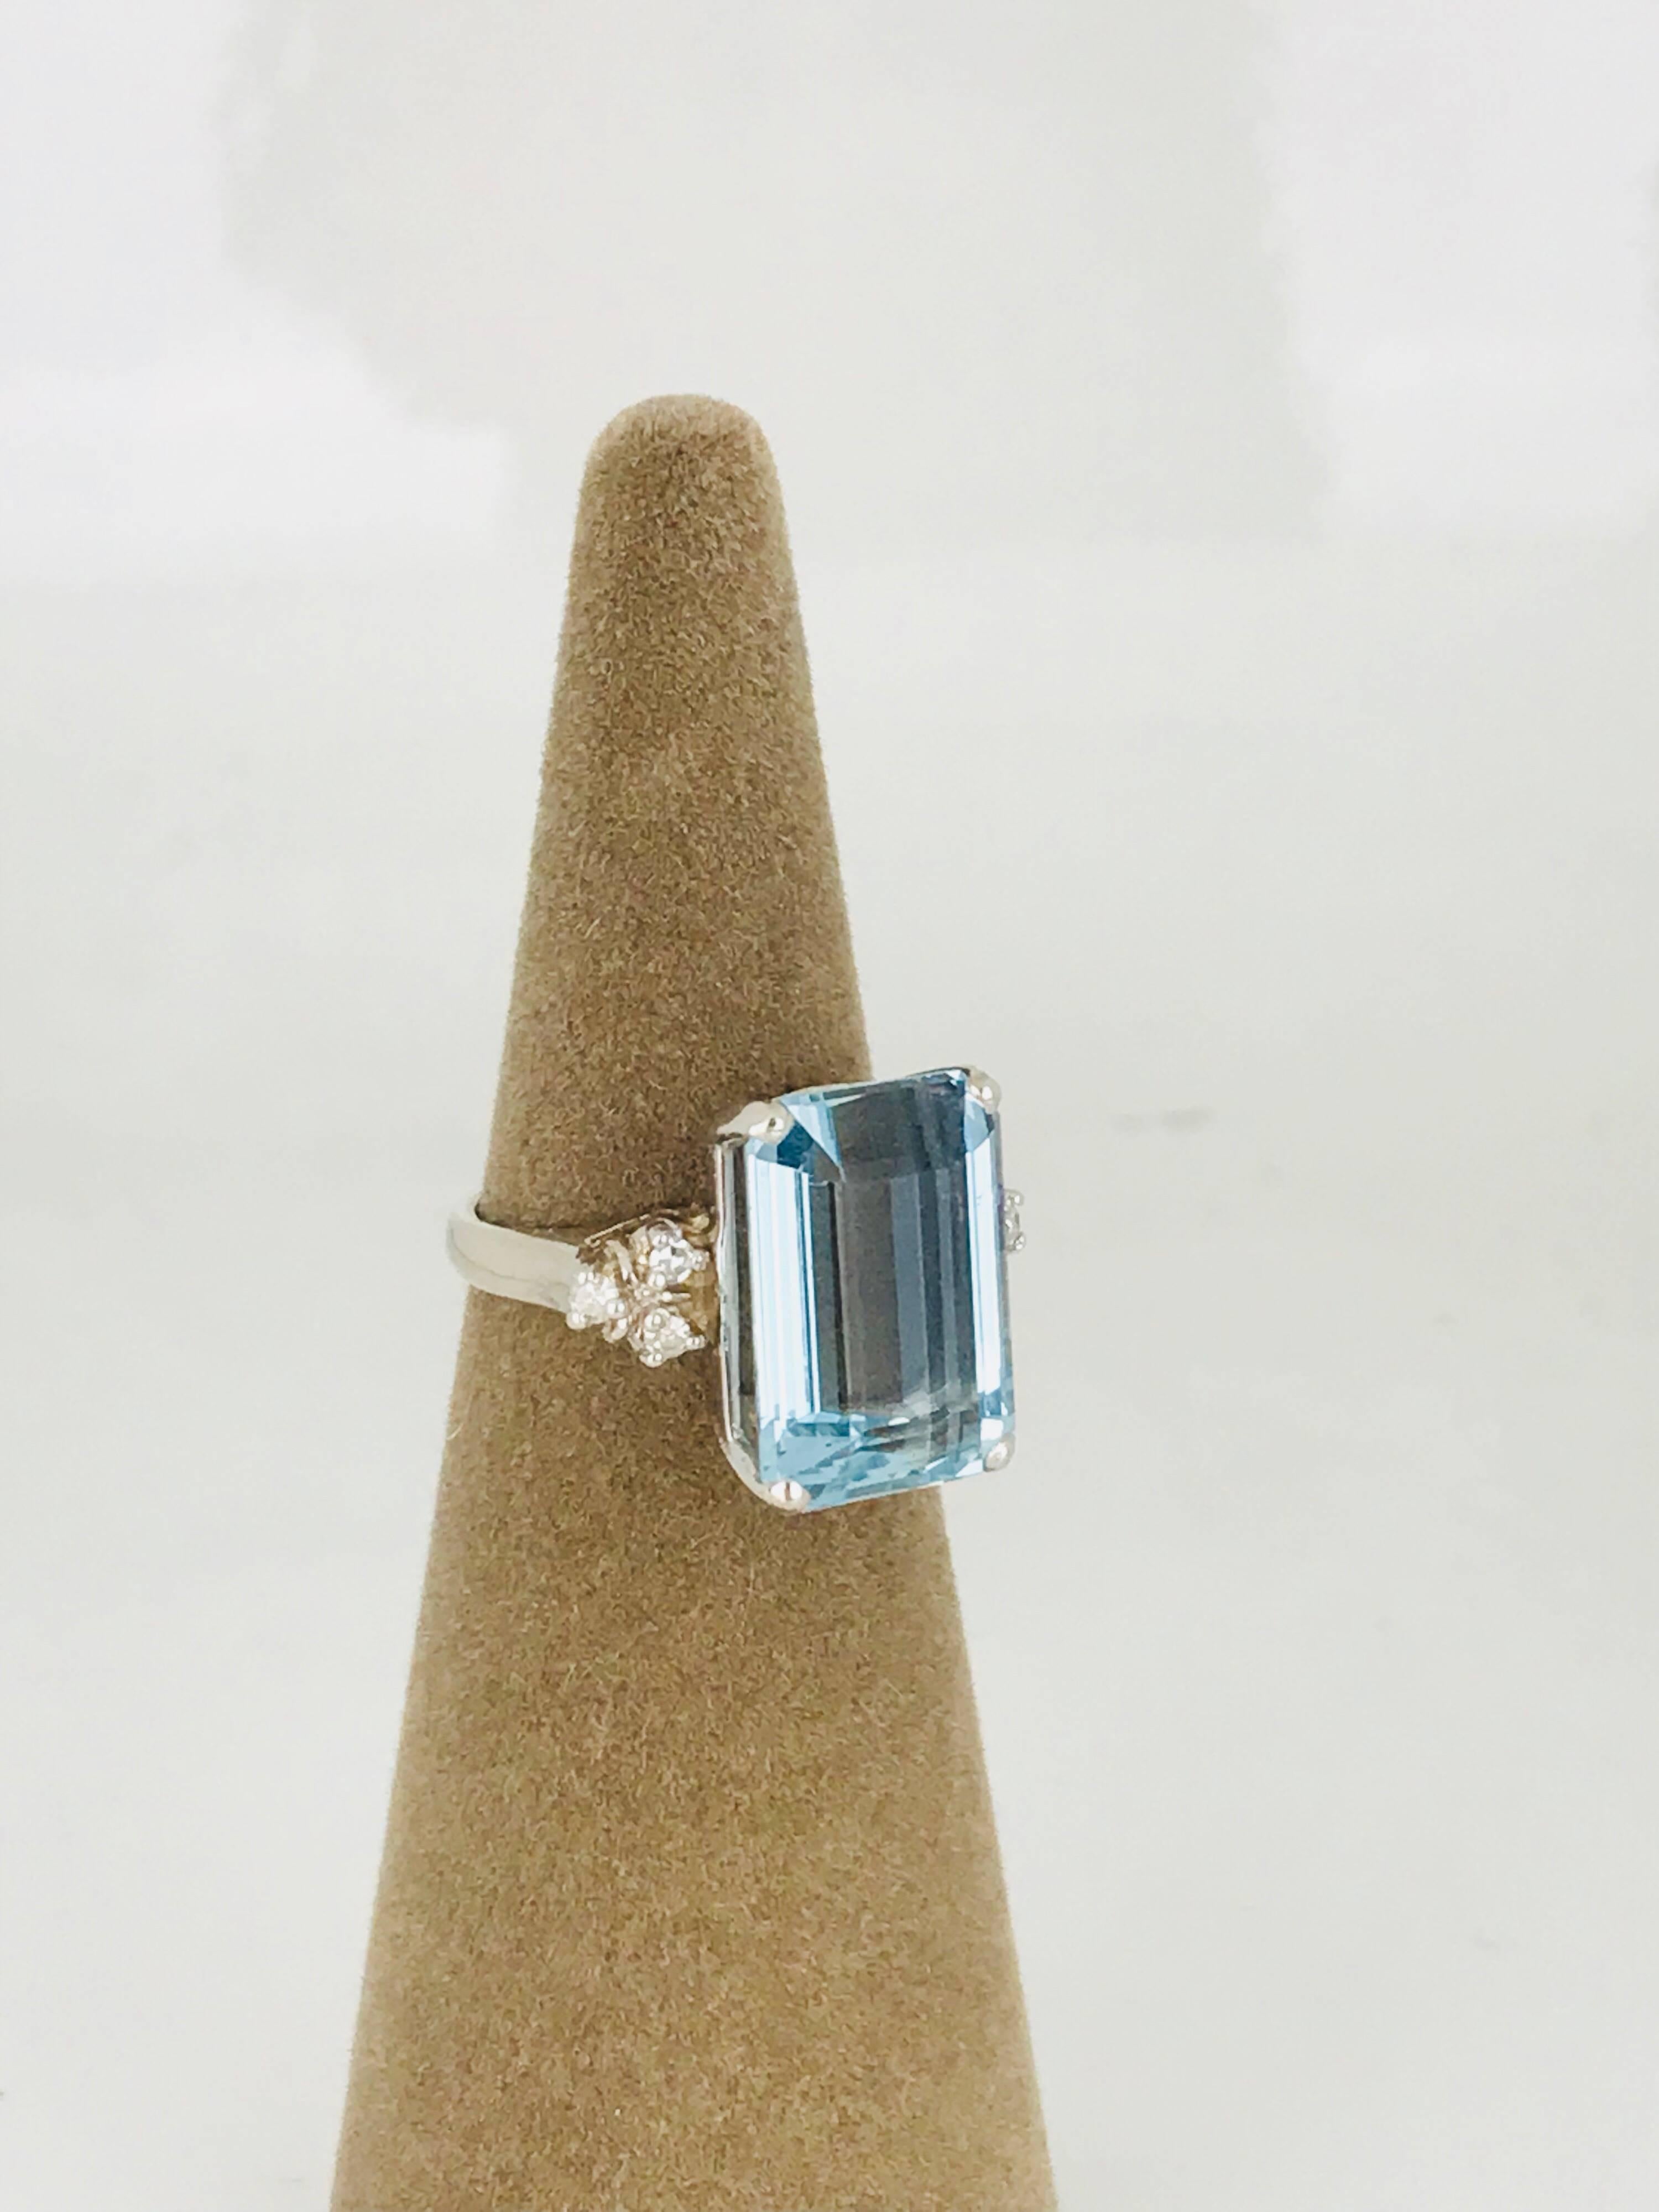 Aquamarine 13.00 Carat Emerald Cut Ring with Diamonds, Retro, circa 1965 For Sale 1